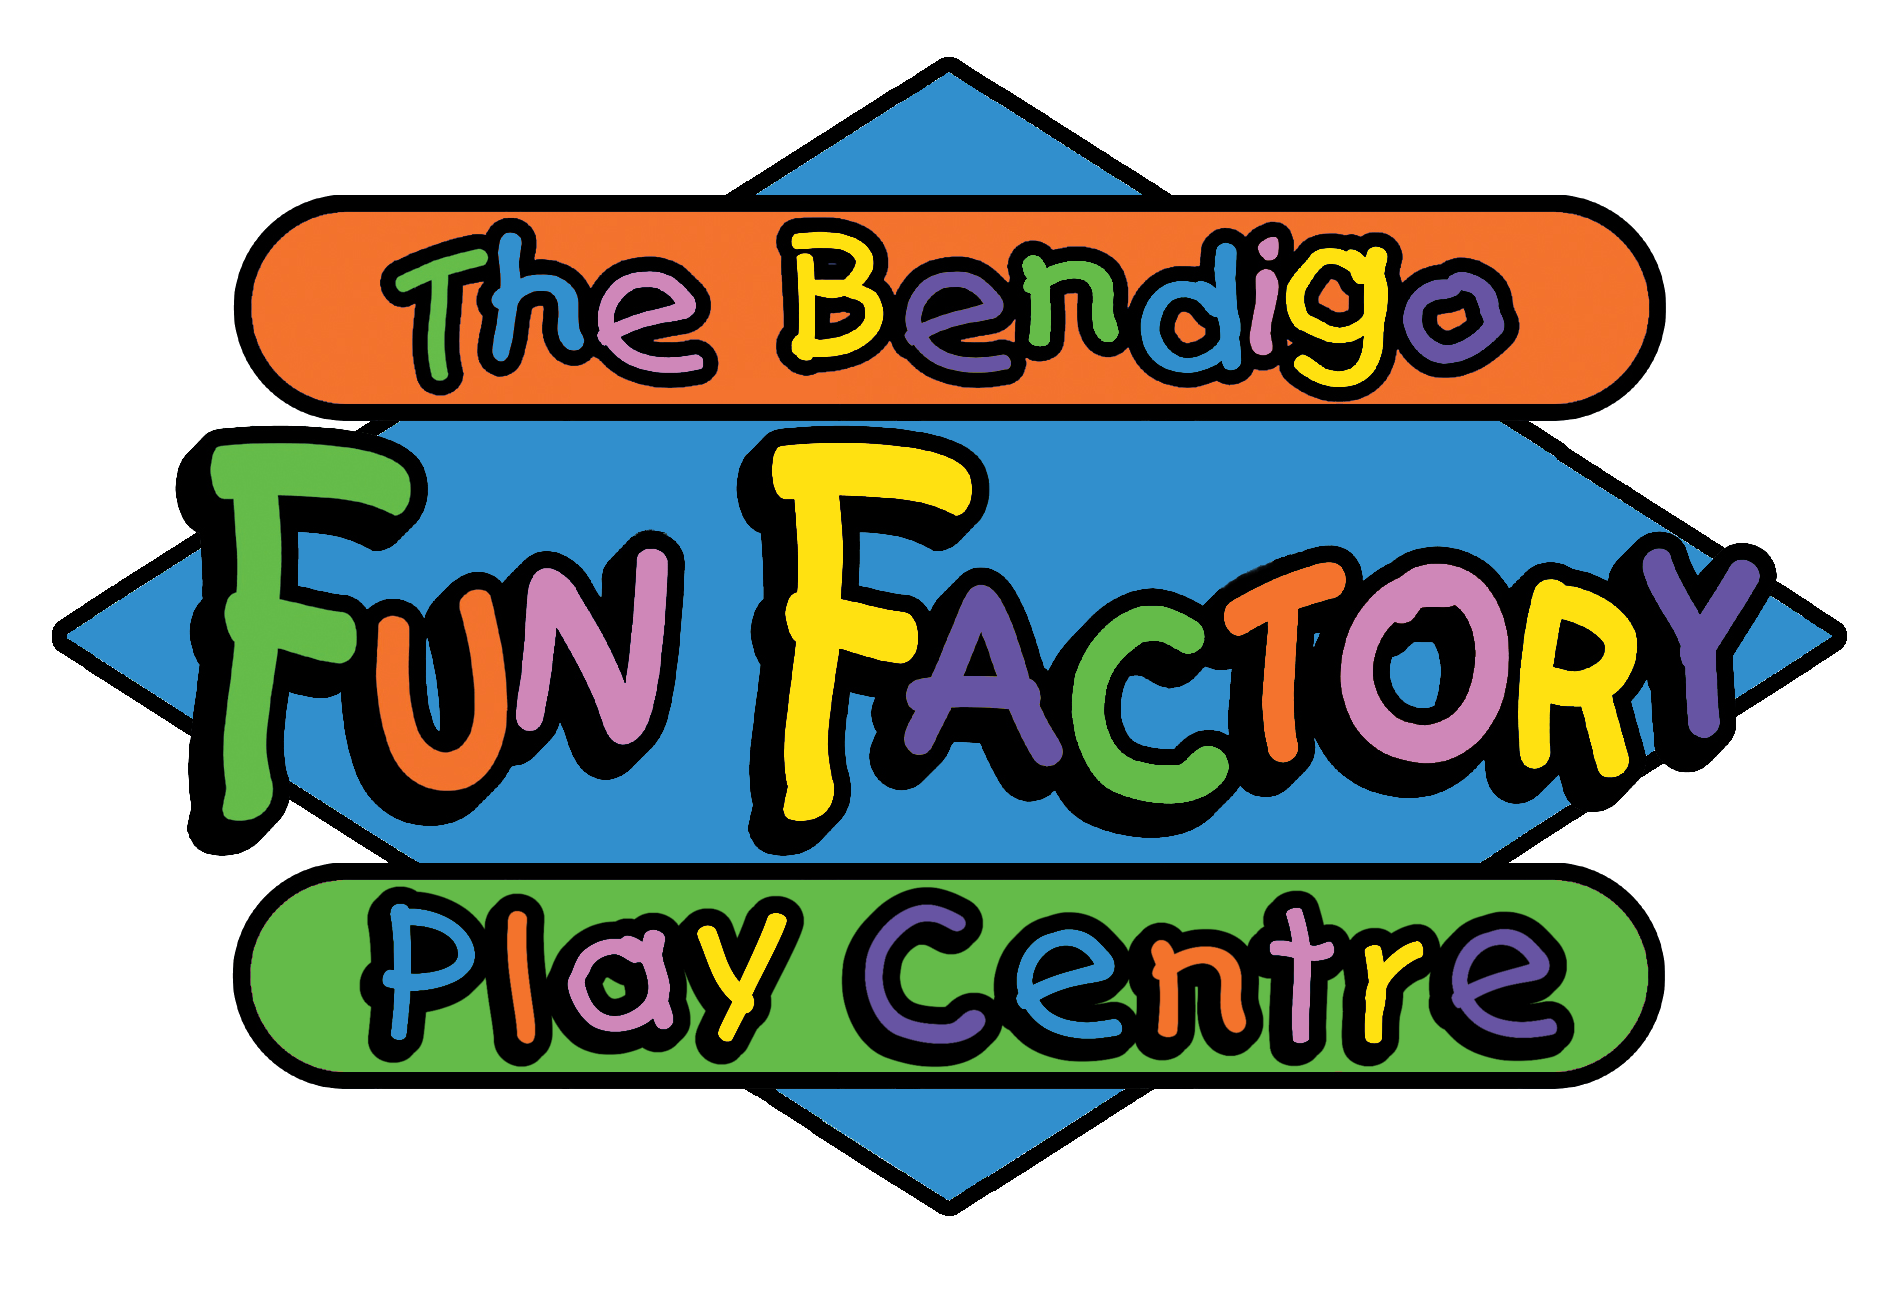 Arctic A. reccomend The bendigo fun factory